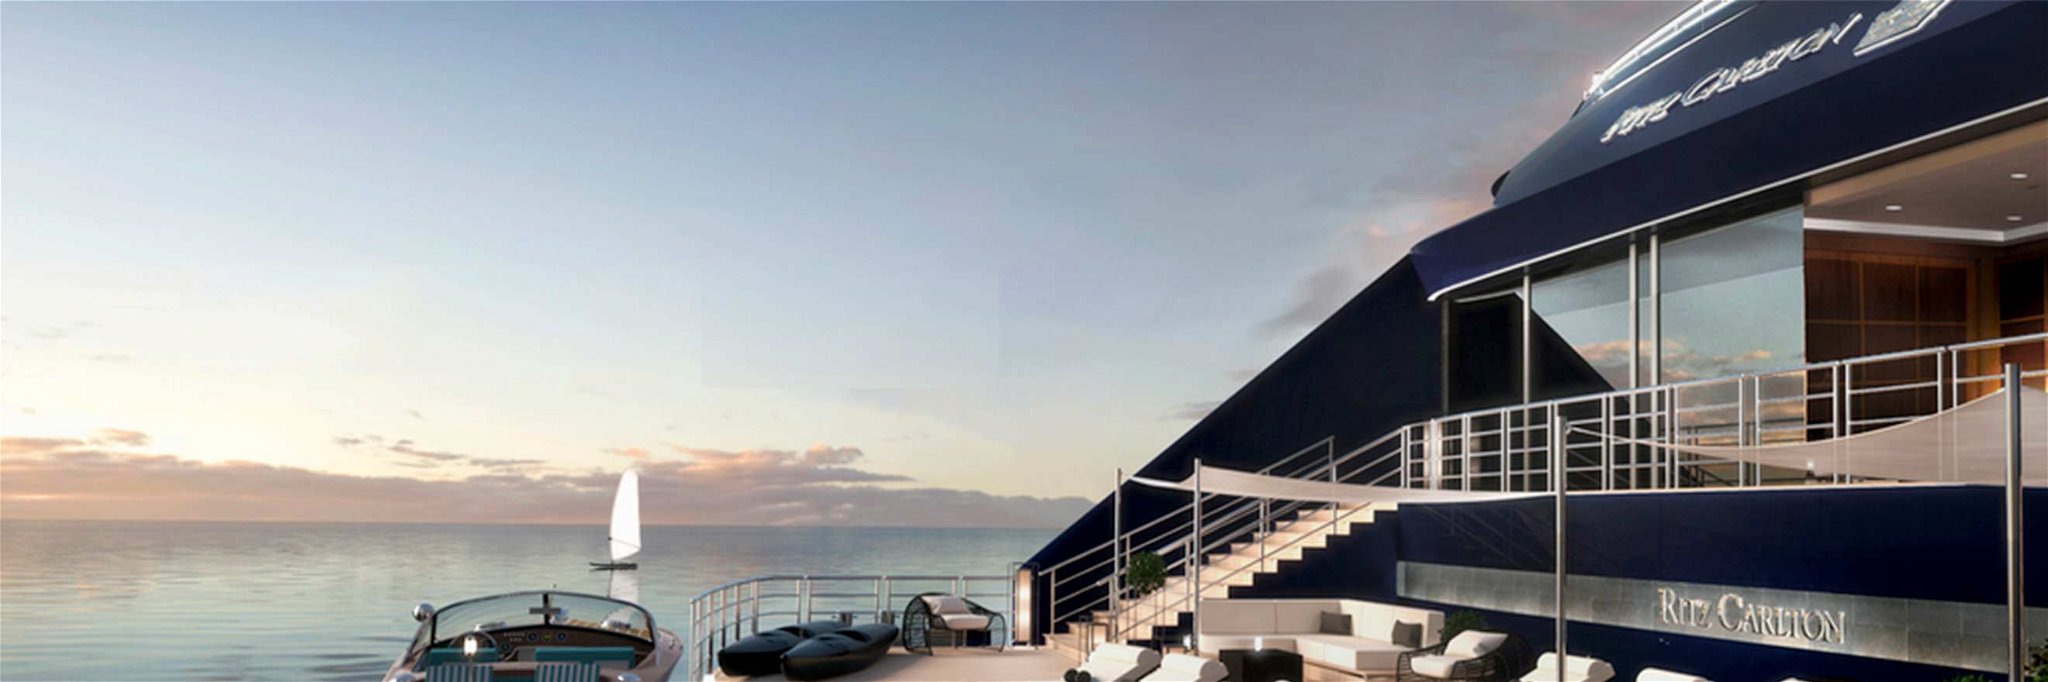 The »Ritz-Carlton« bringt als erste Luxushotelmarke Service und Stil auf hohe See.